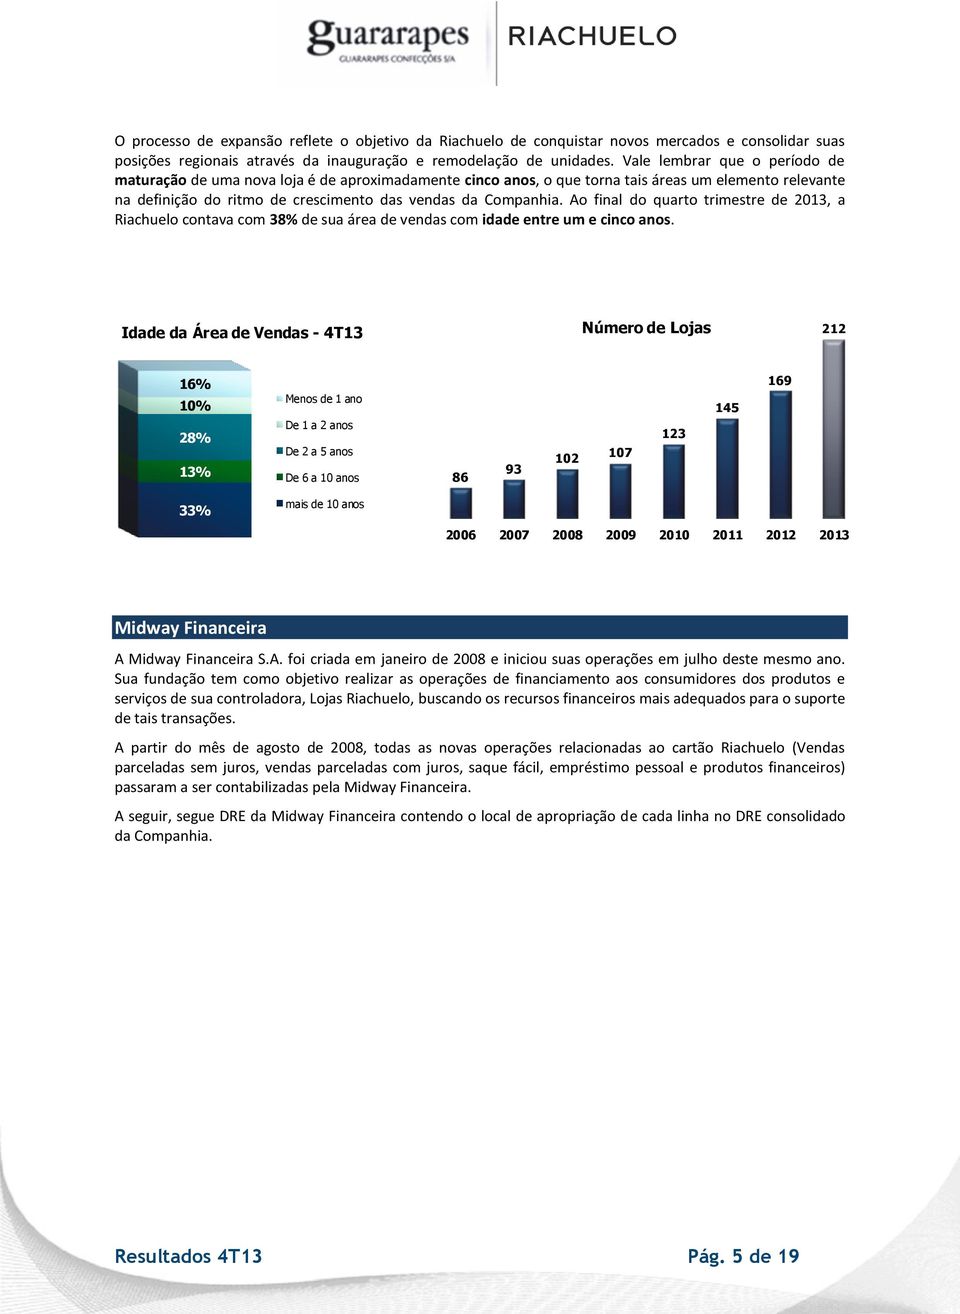 Ao final do quarto trimestre de 2013, a Riachuelo contava com 38% de sua área de vendas com idade entre um e cinco anos.